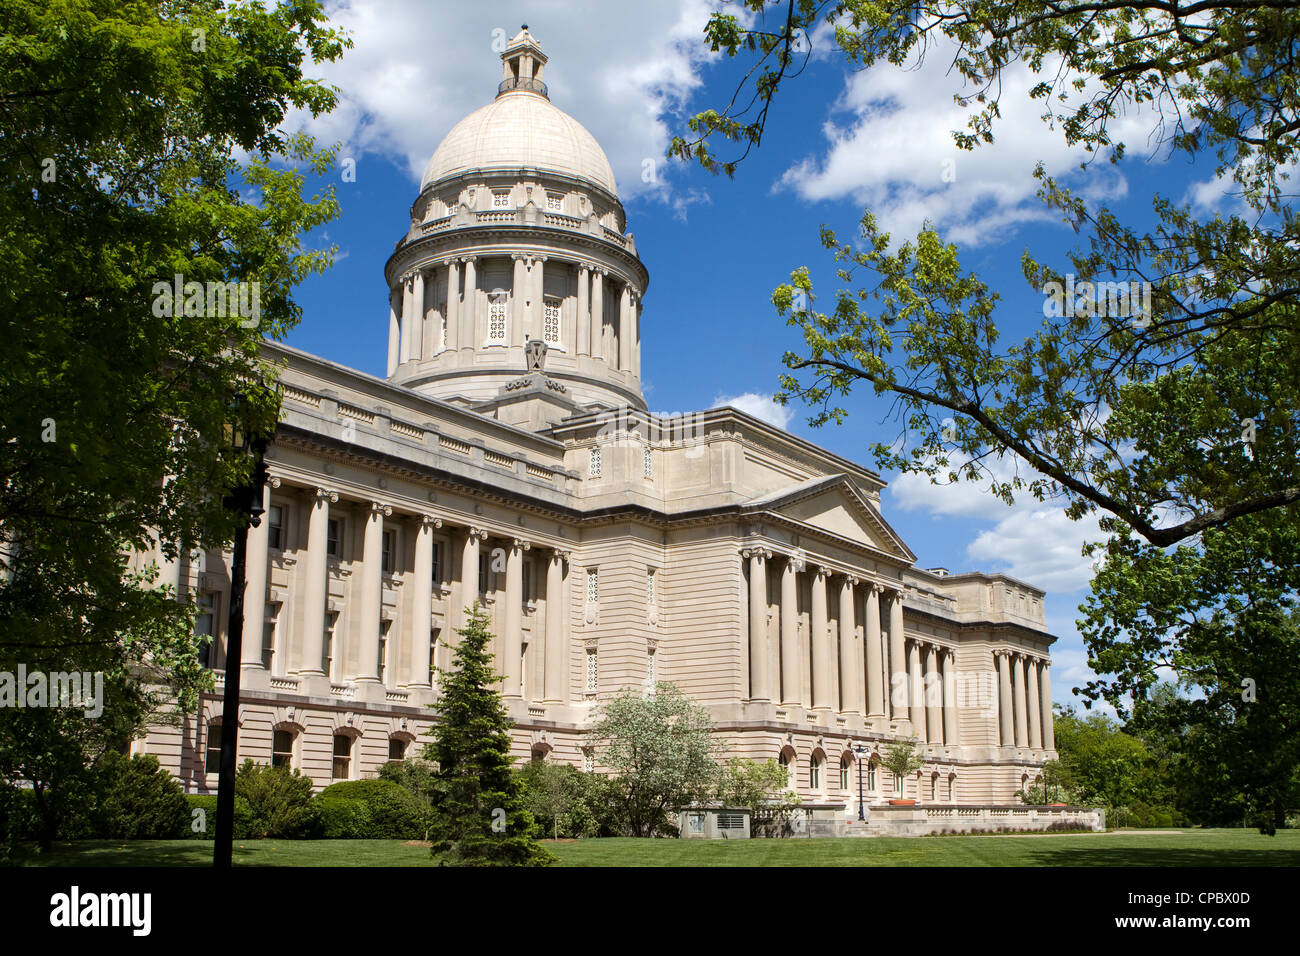 Indiana statehouse Capitol building à Frankfort, Kentucky, USA contre un ciel bleu avec des nuages. Banque D'Images